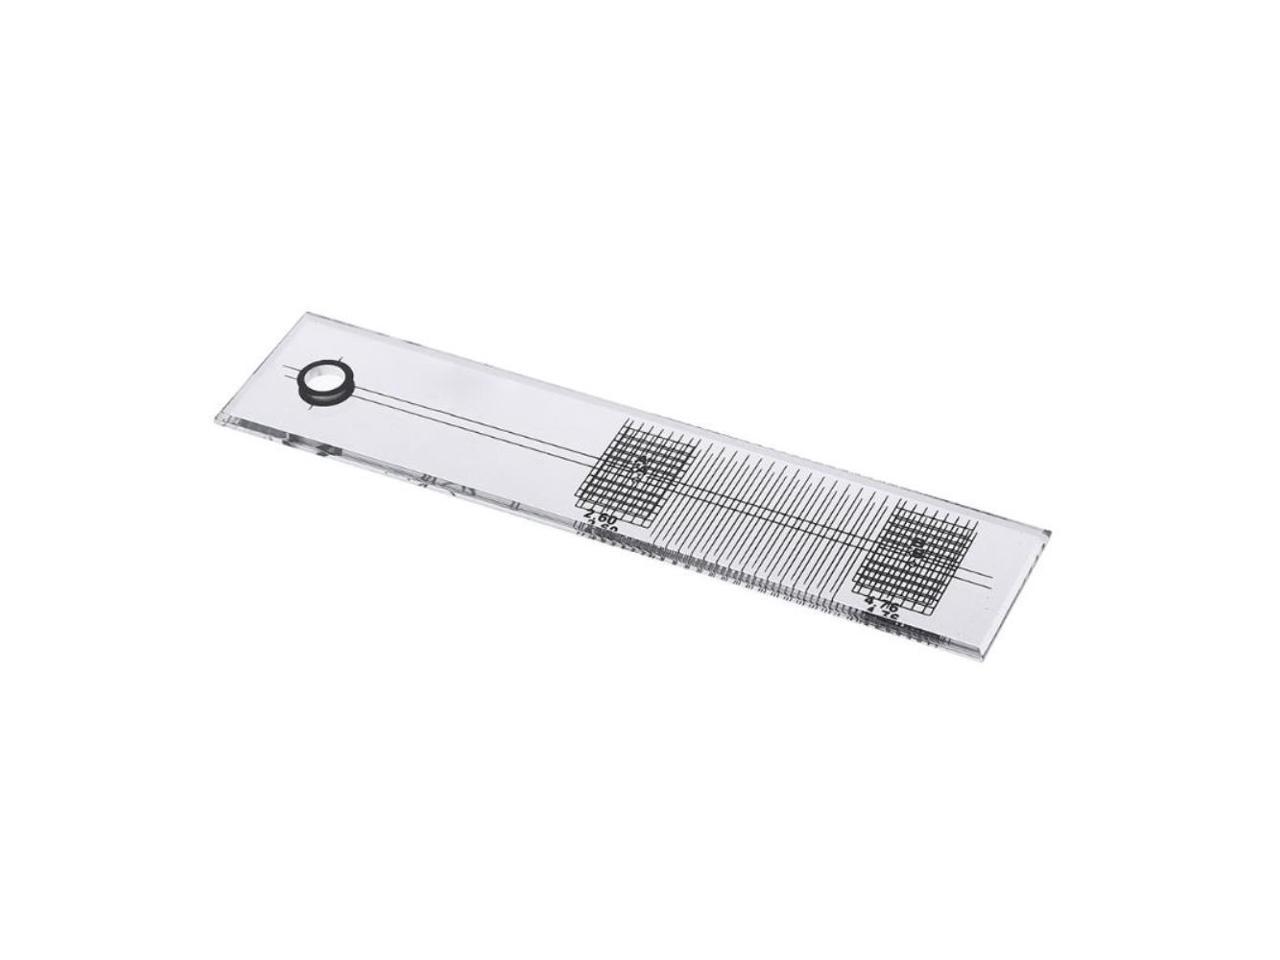 mirror ruler tool